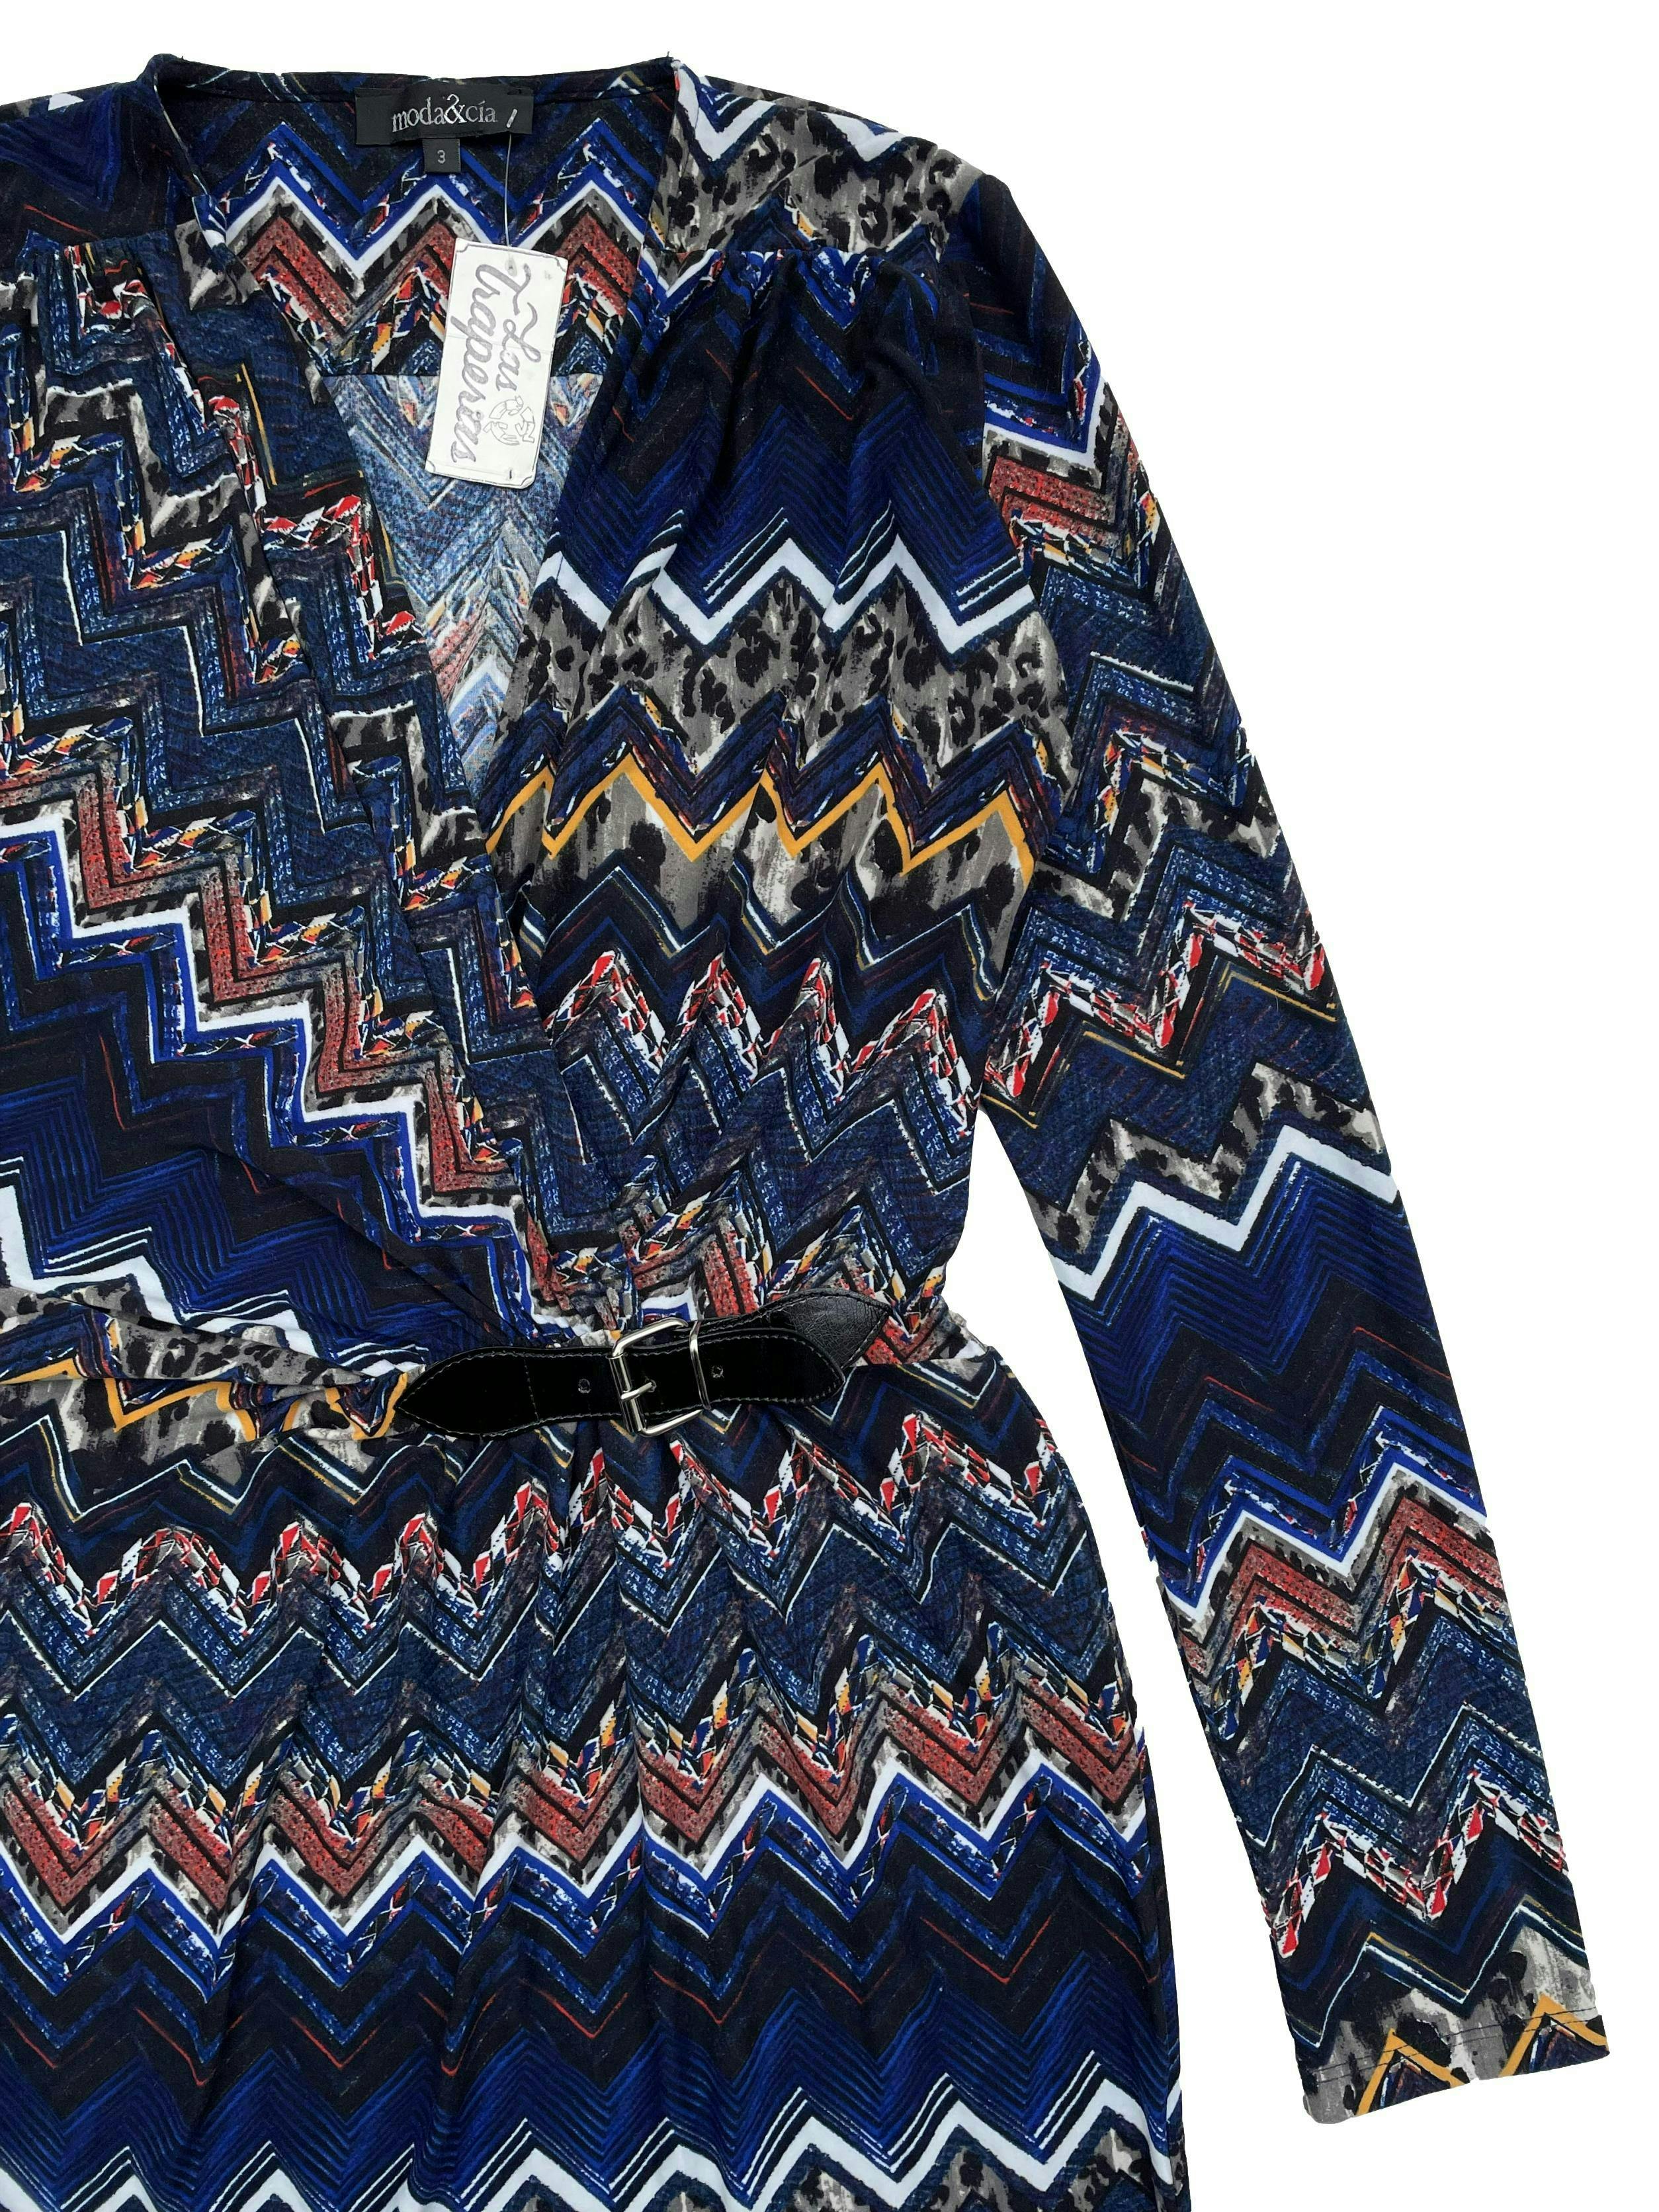 Vestido Moda & Cia azul con estampado en zigzag, tela stretch, escote en V con fruncido y aplicación de correa. Busto 94cm, Largo 100cm.